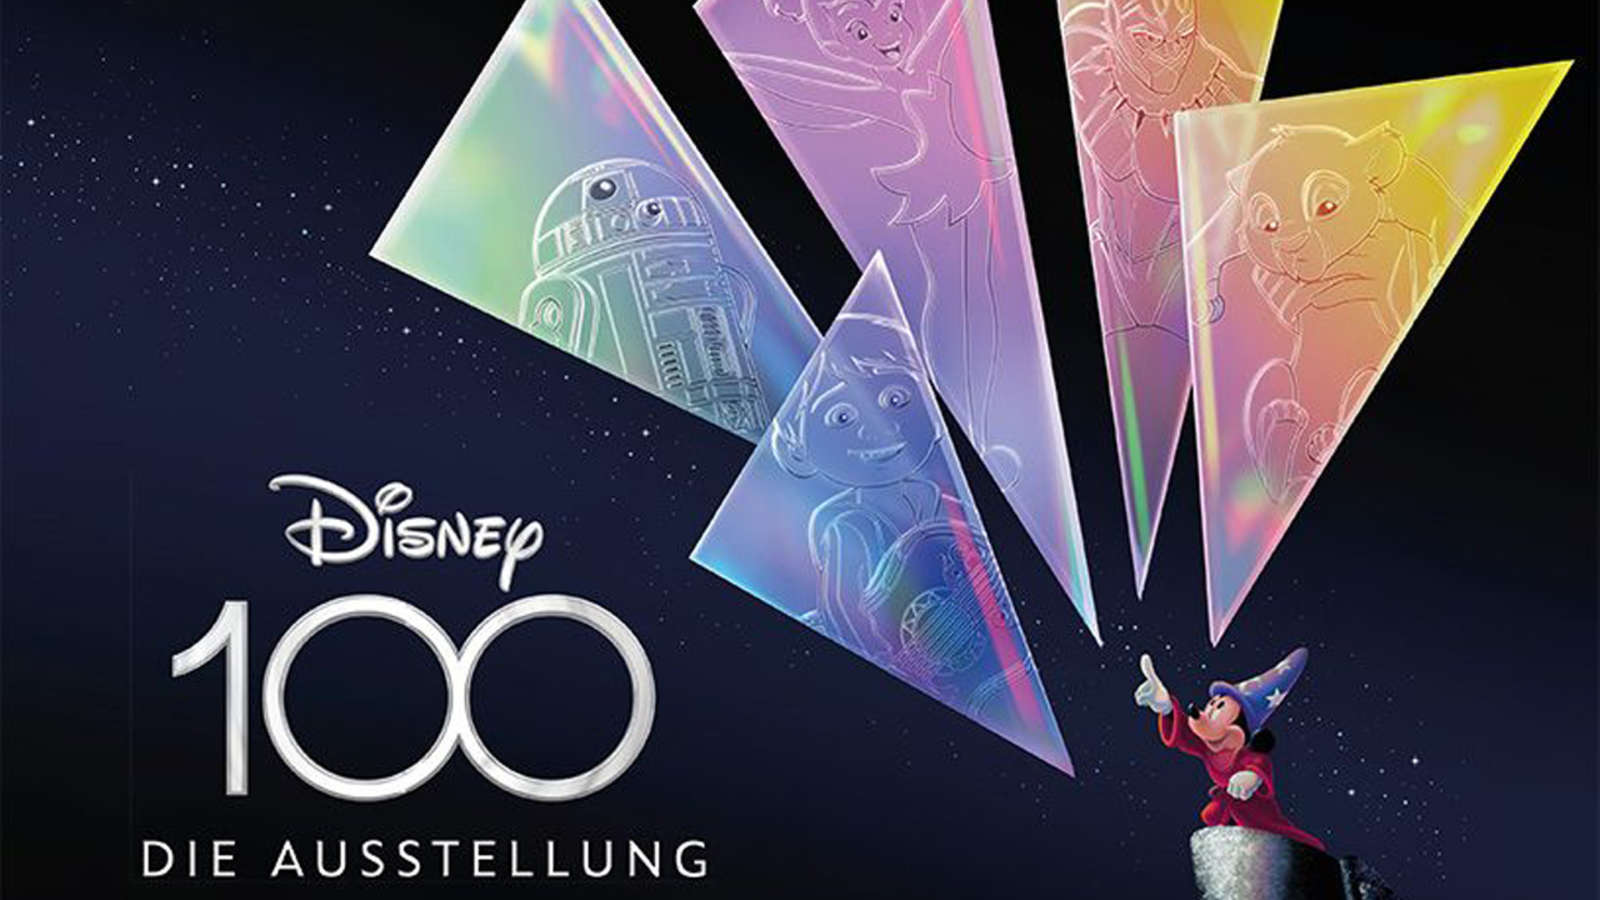 Disney 100 - Die Ausstellung